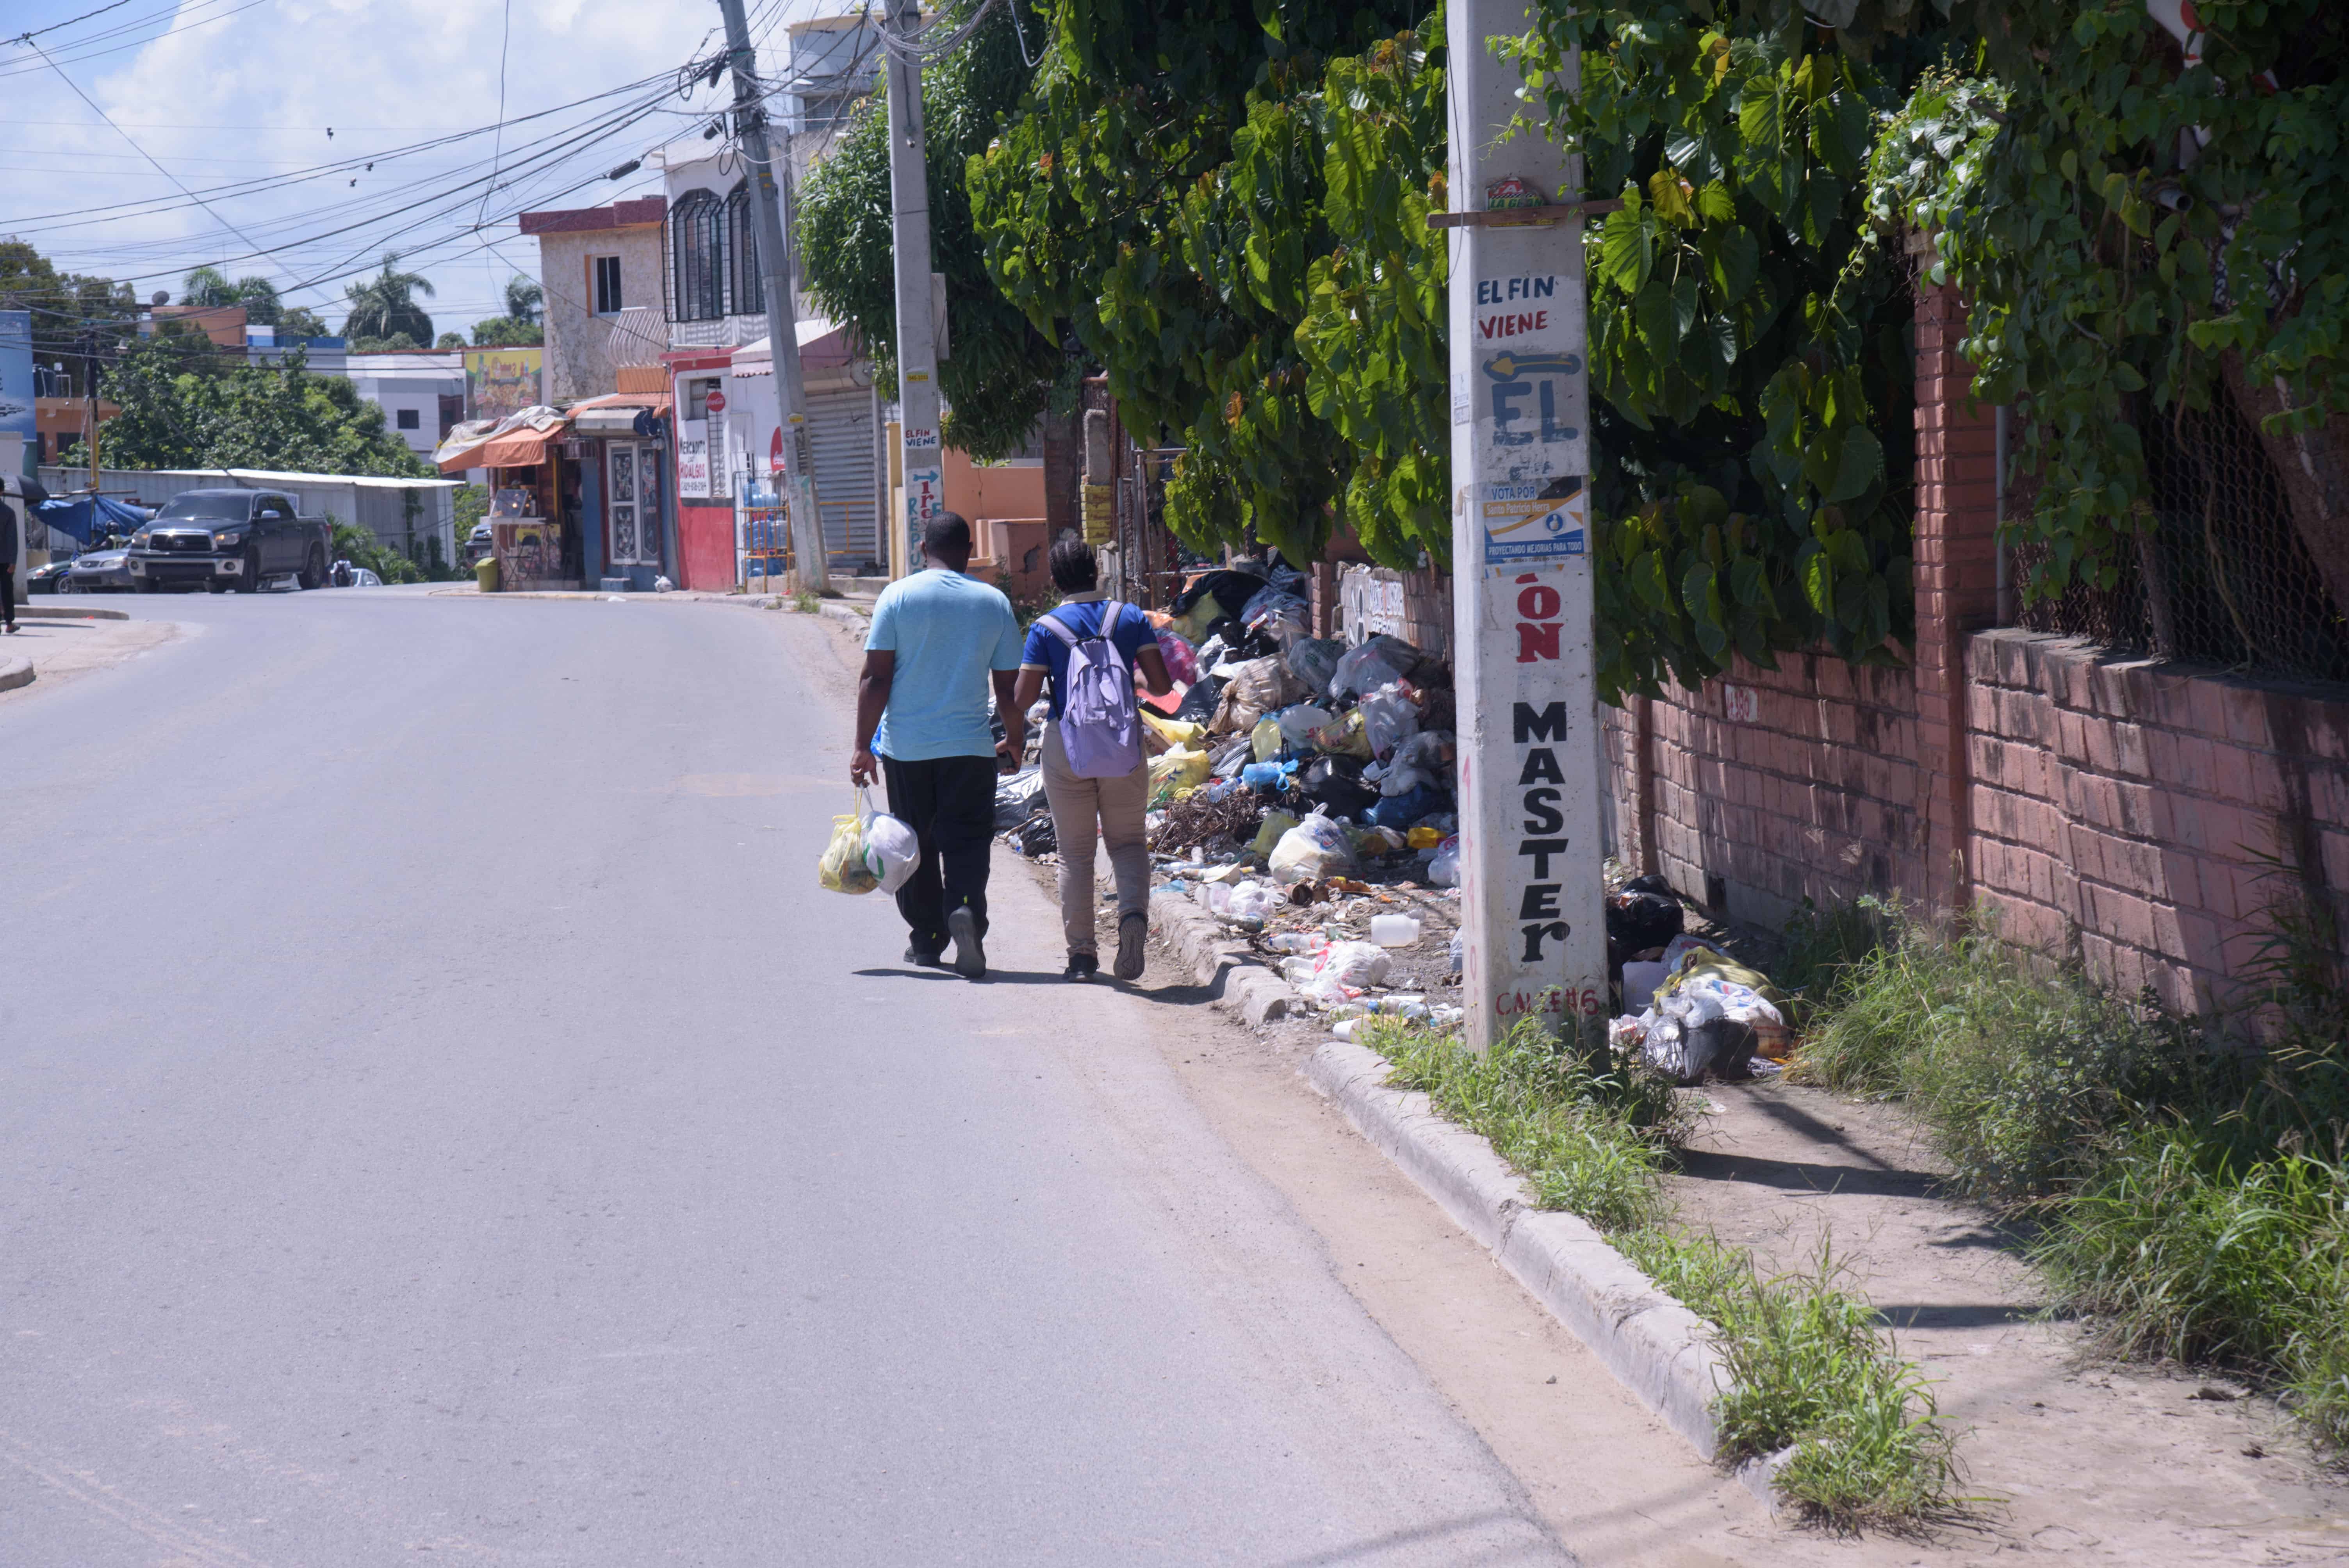 Esto en la carretera La Cienaga, Santo Domingo Oeste, la gente camina por la calle por la basura